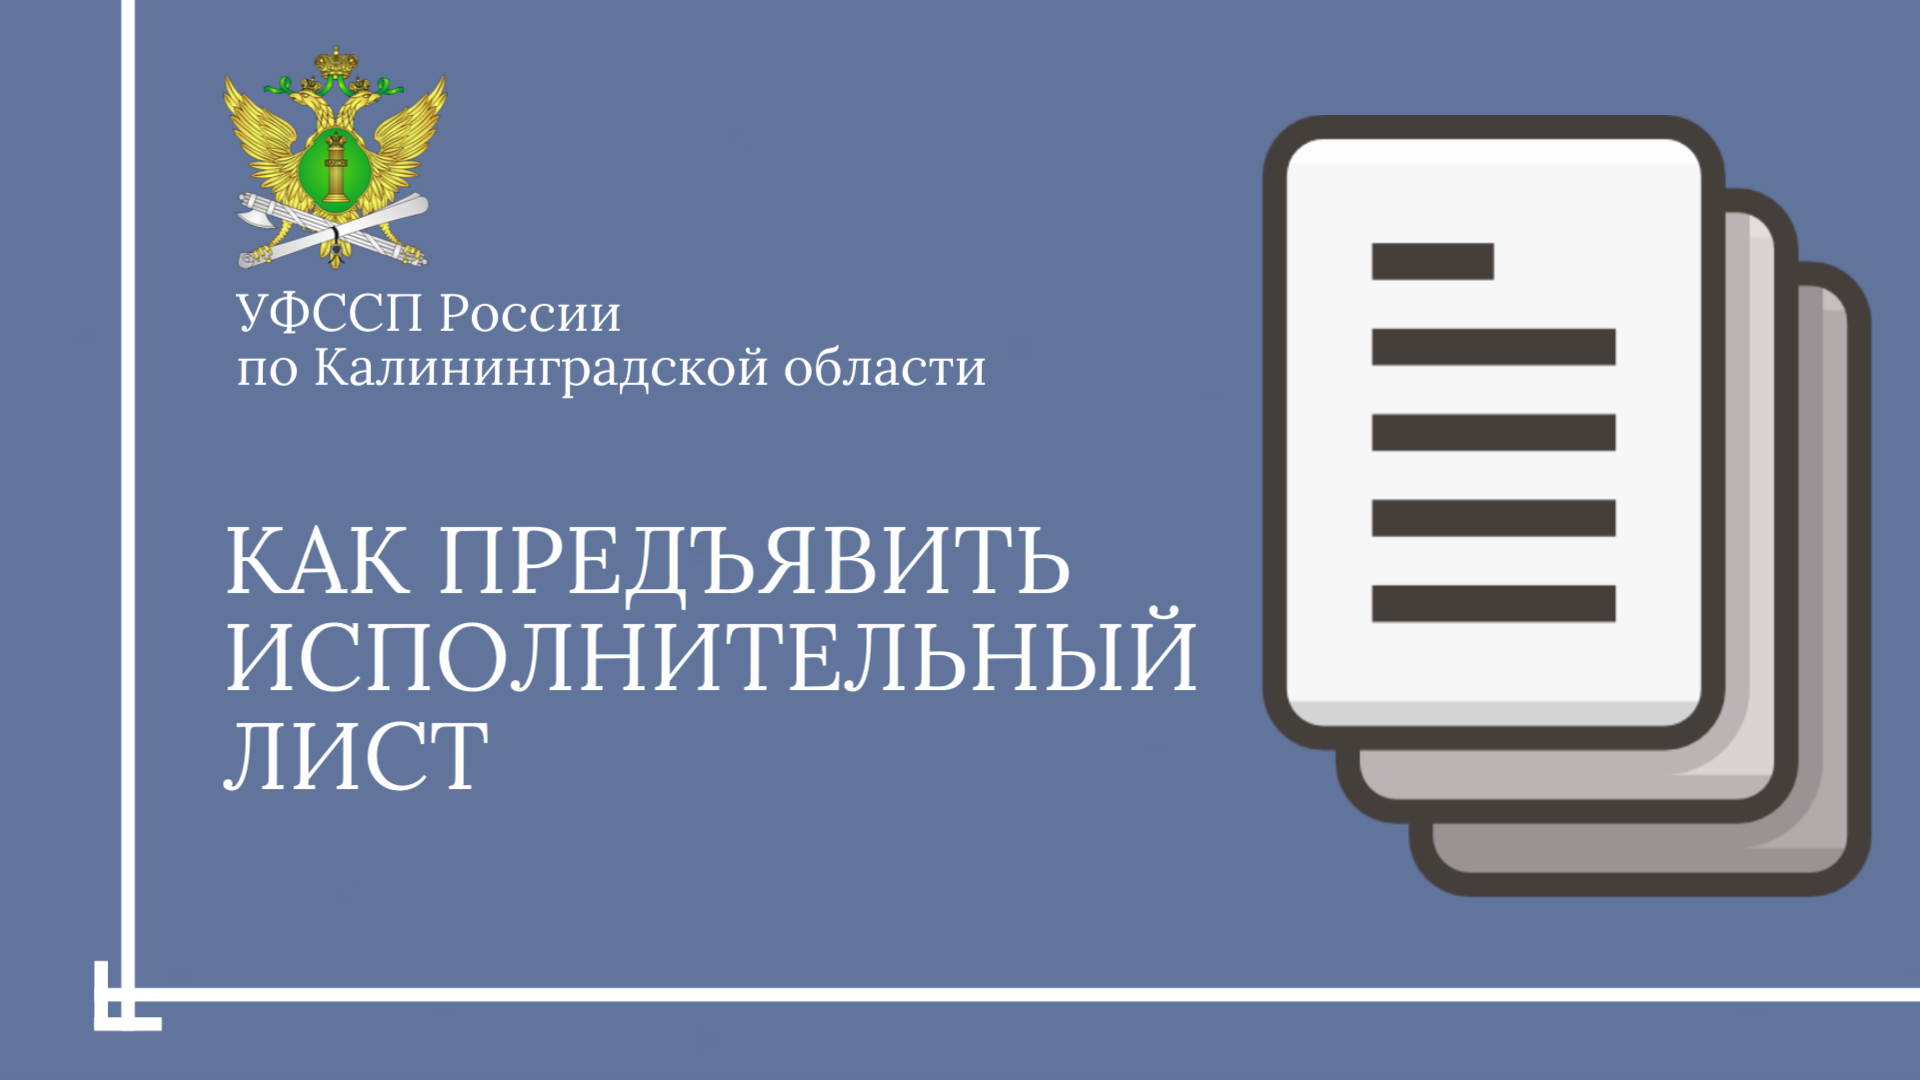 УФССП по Калининградской области рассказывает, как предъявить исполнительный лист в службу судебных приставов